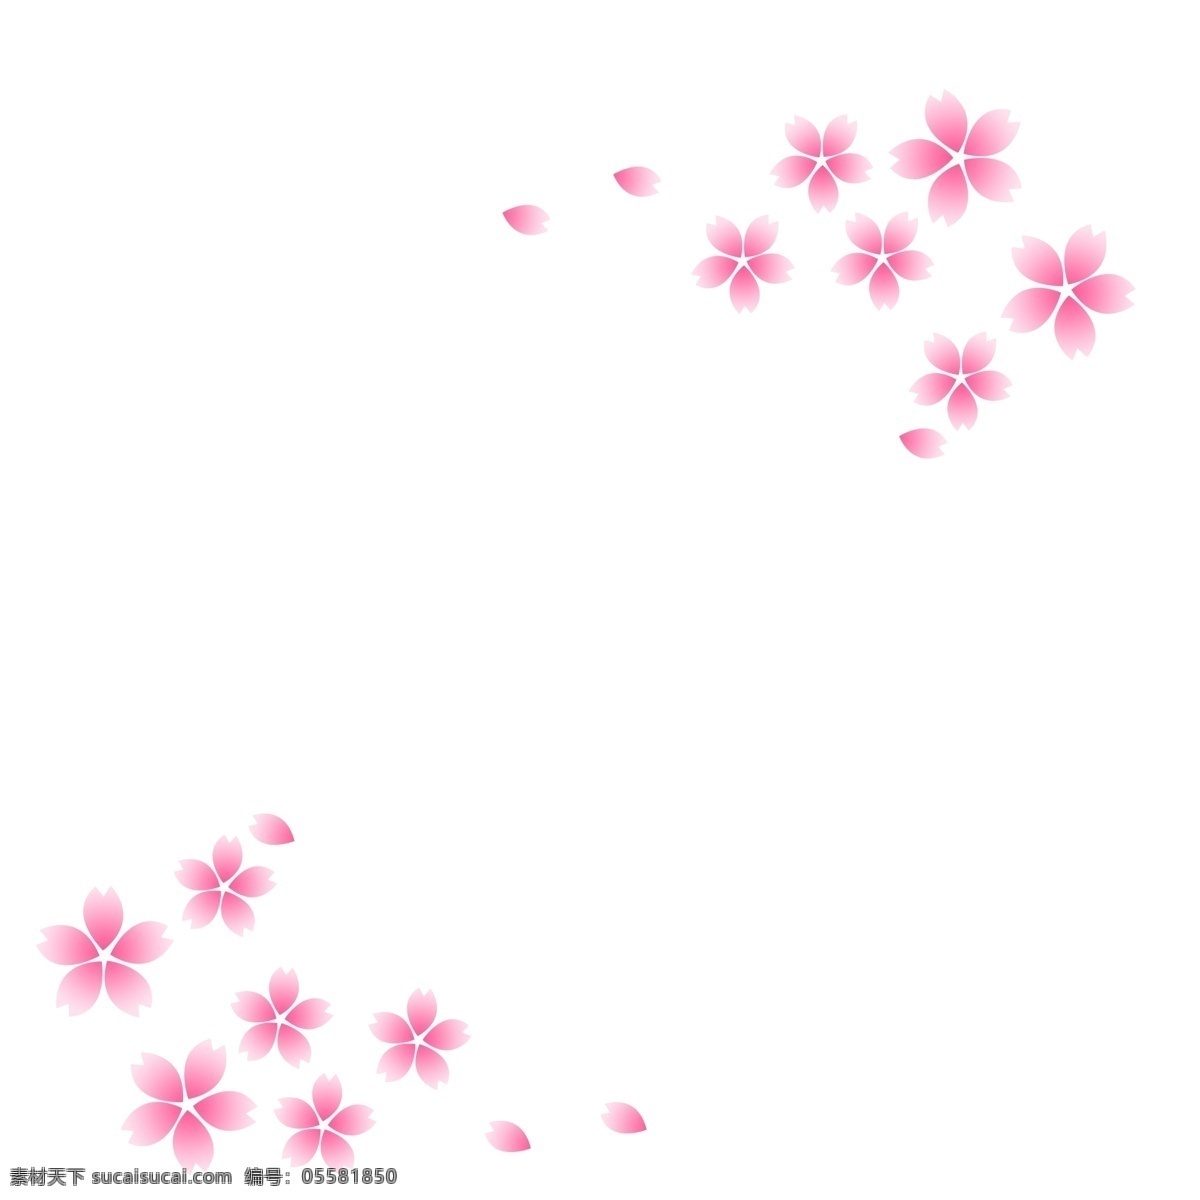 春季 粉色 樱花 边框 卡通 樱花边框 粉色樱花 唯美 简约 装饰 春天 海报 banner 手账